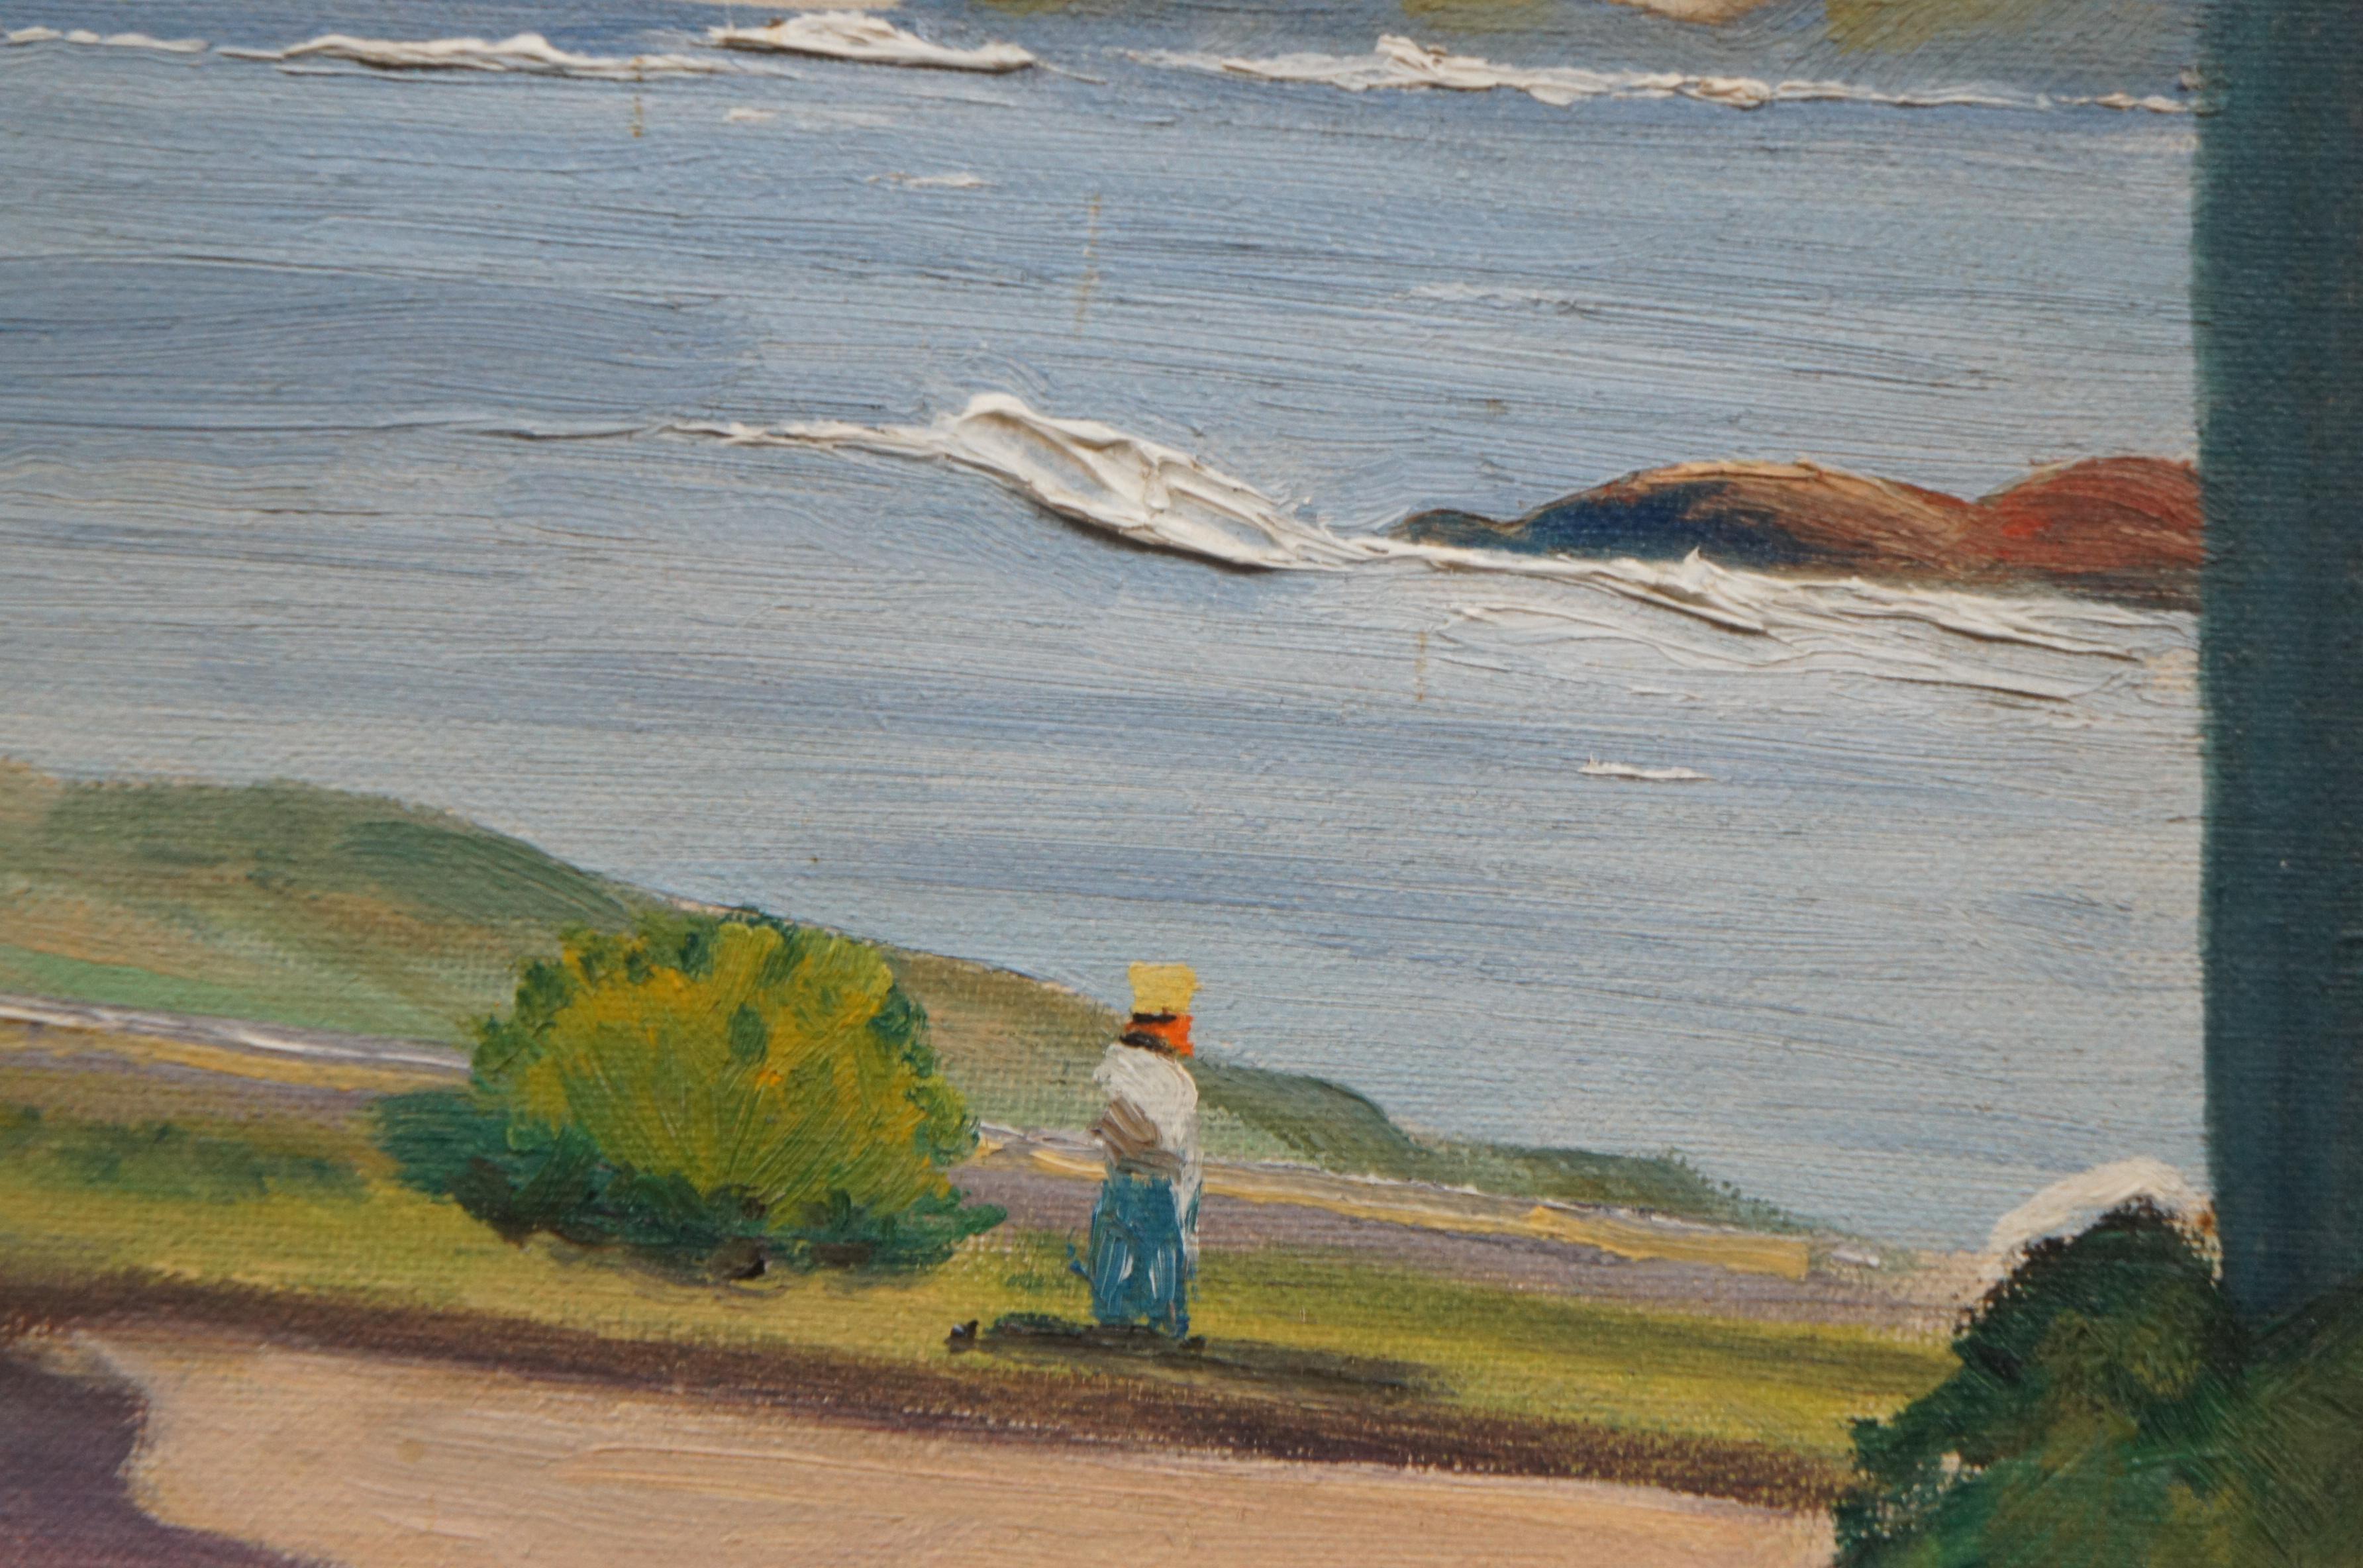 1956 Chrisman Oil Painting Coastal Ocean Landscape Figures Sailboat 4